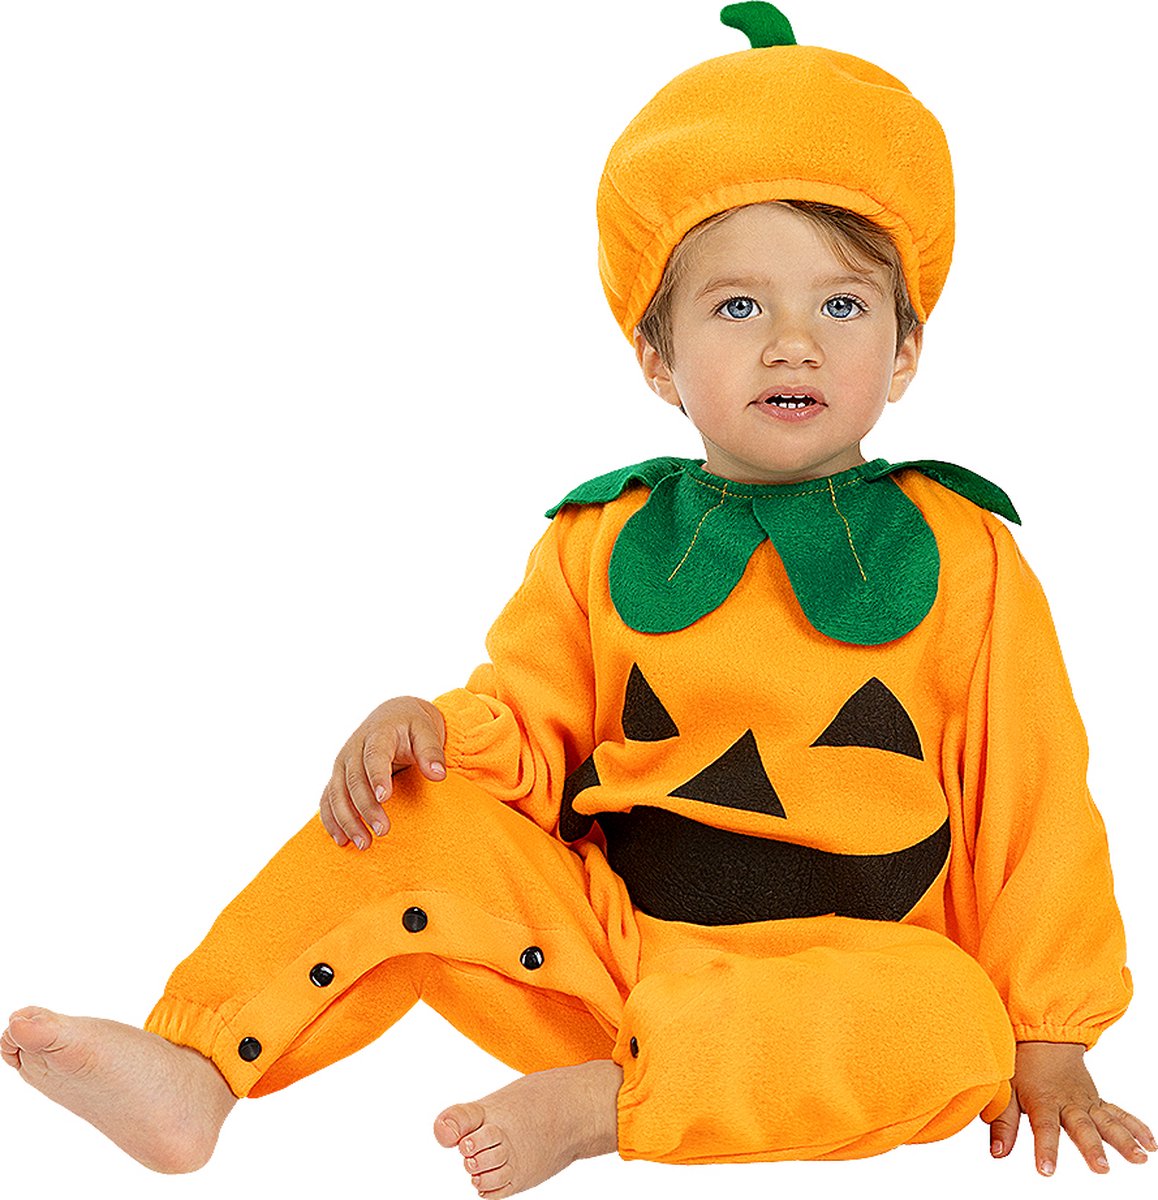 FUNIDELIA Pompoen kostuum voor baby - 6-12 mnd (69-80 cm) - Oranje